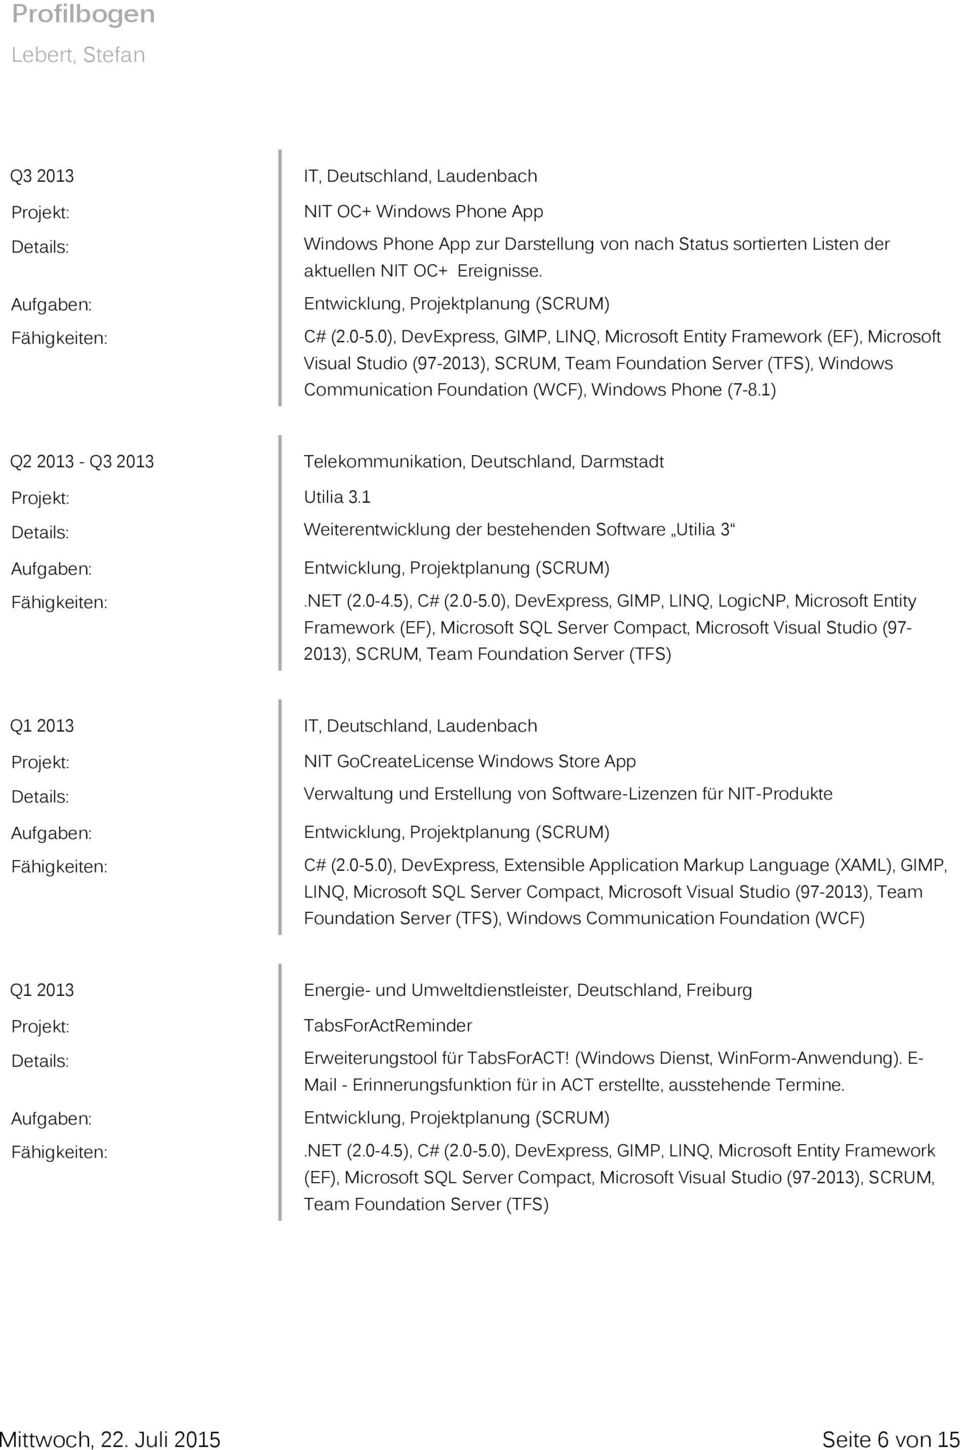 1) Q2 2013 - Q3 2013 Telekommunikation, Deutschland, Darmstadt Utilia 3.1 Weiterentwicklung der bestehenden Software Utilia 3.NET (2.0-4.5), C# (2.0-5.